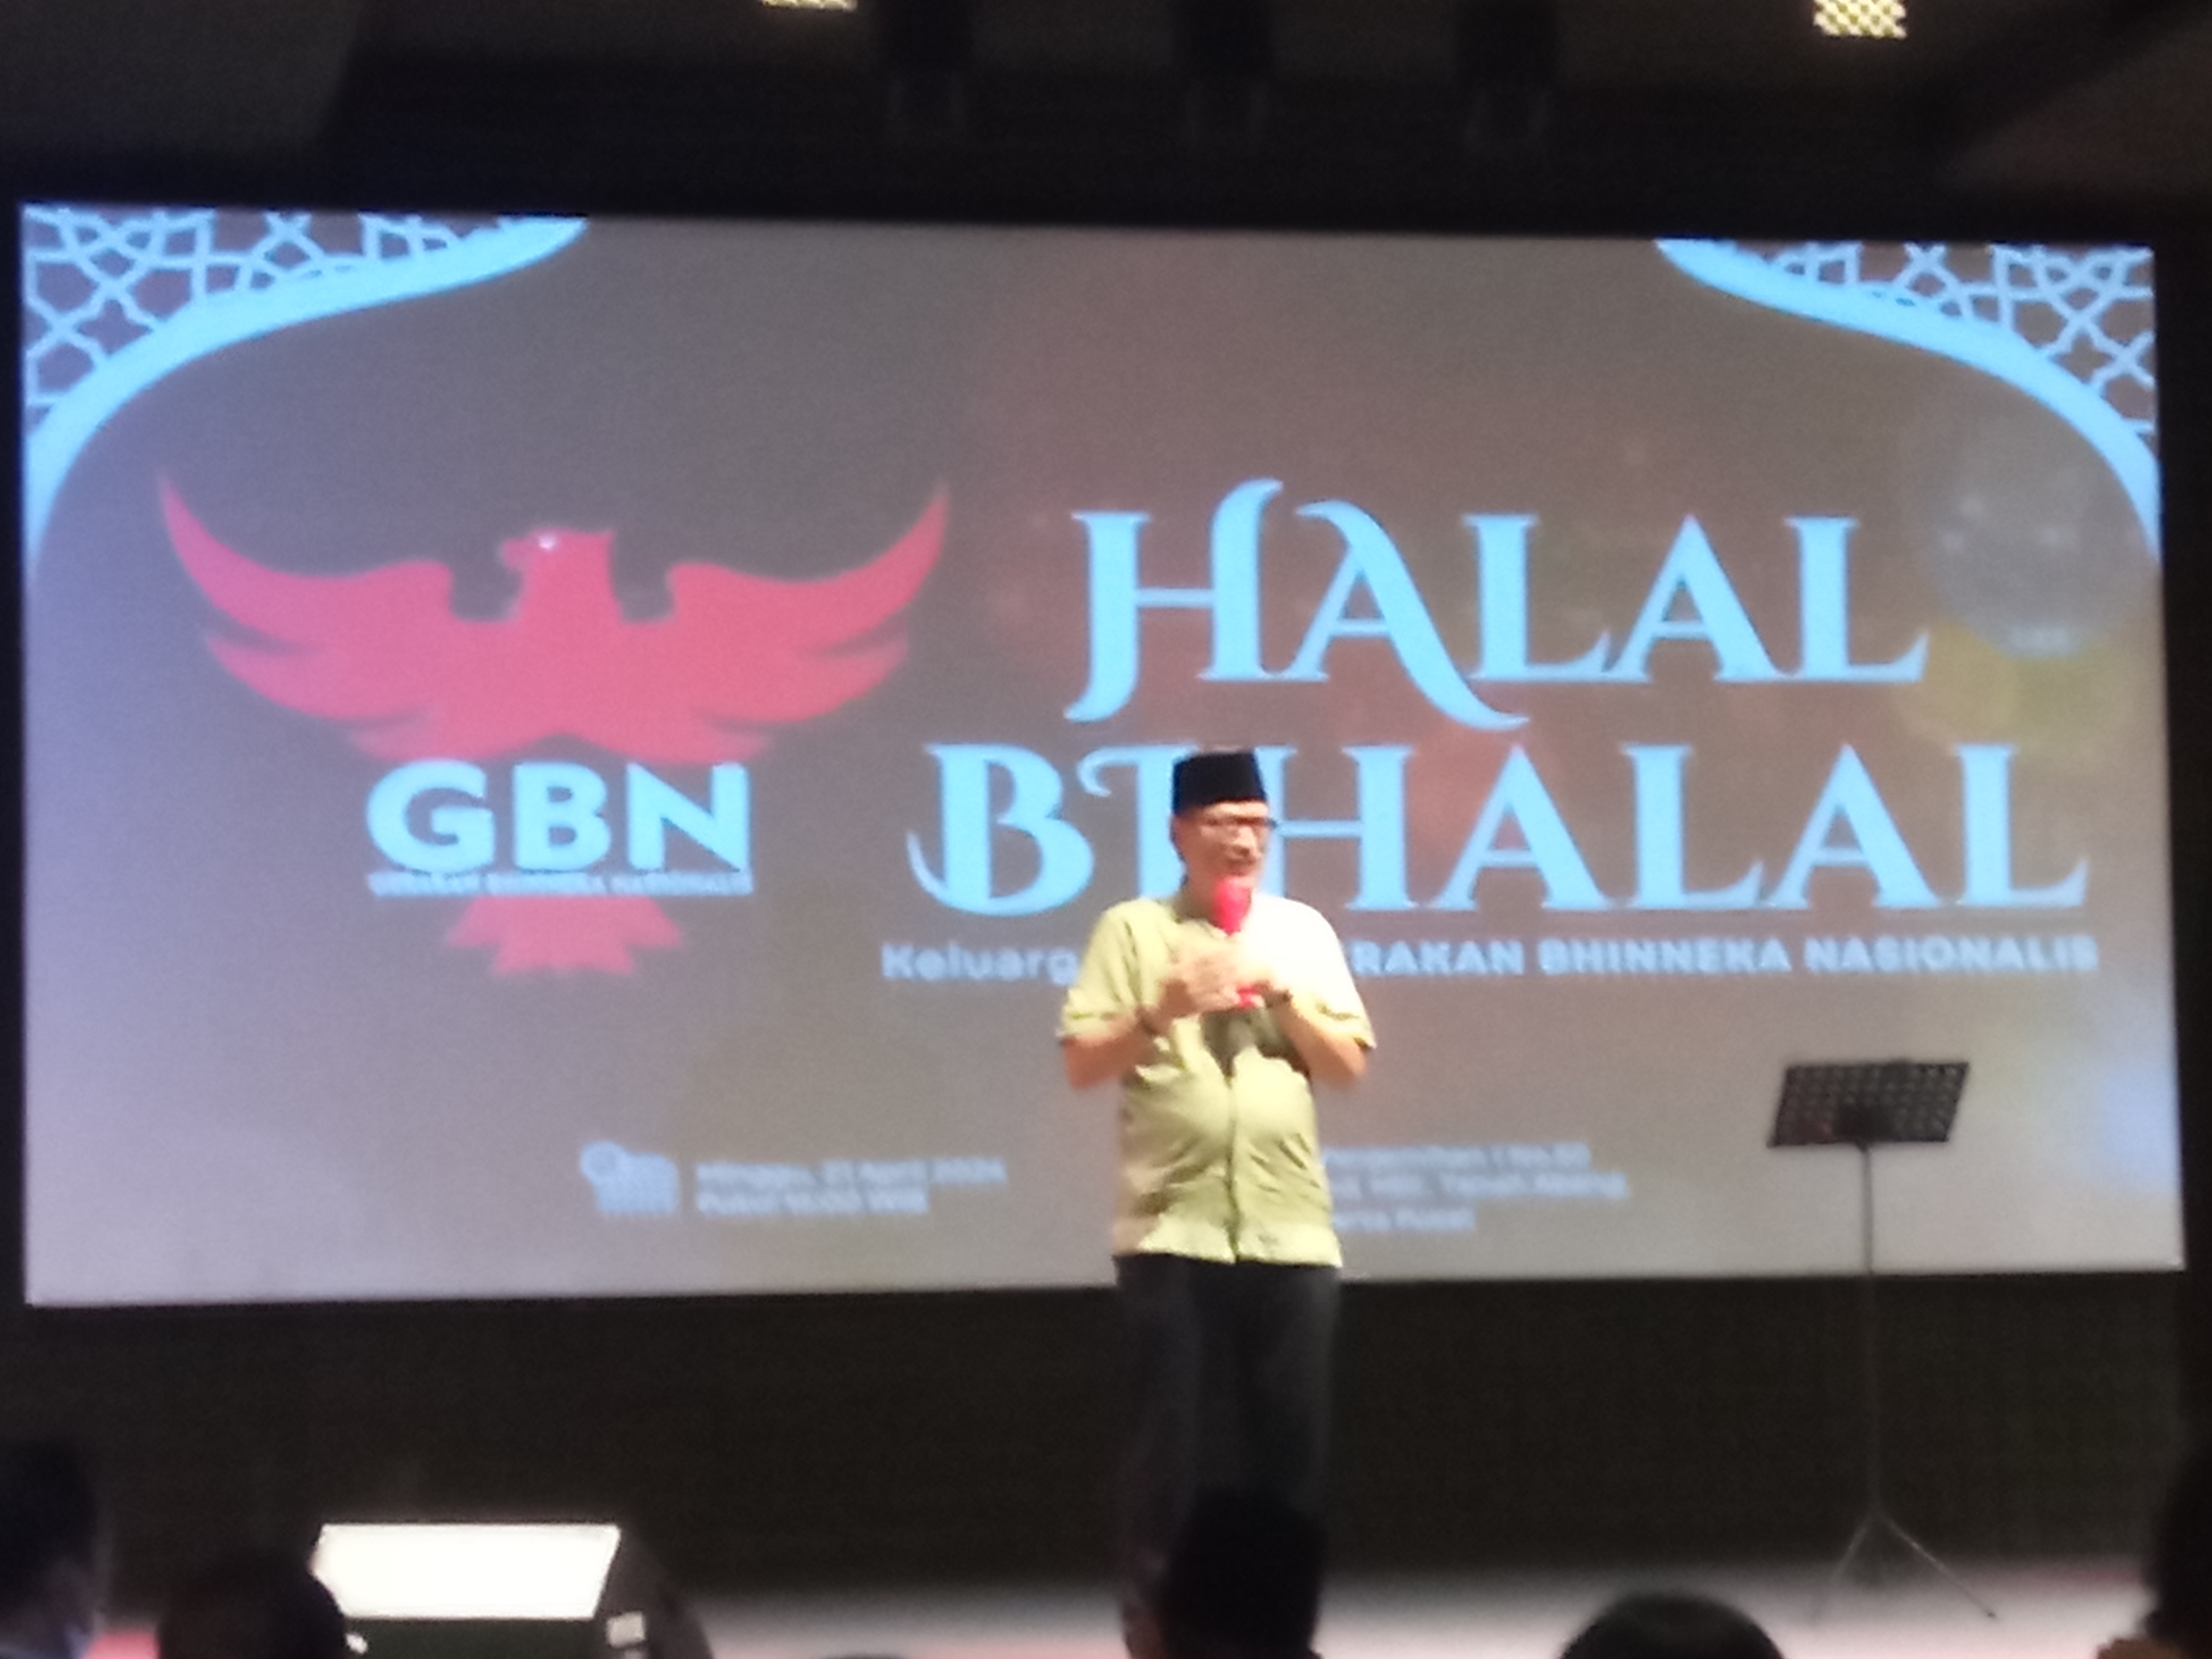 Halal Bihalal GBN